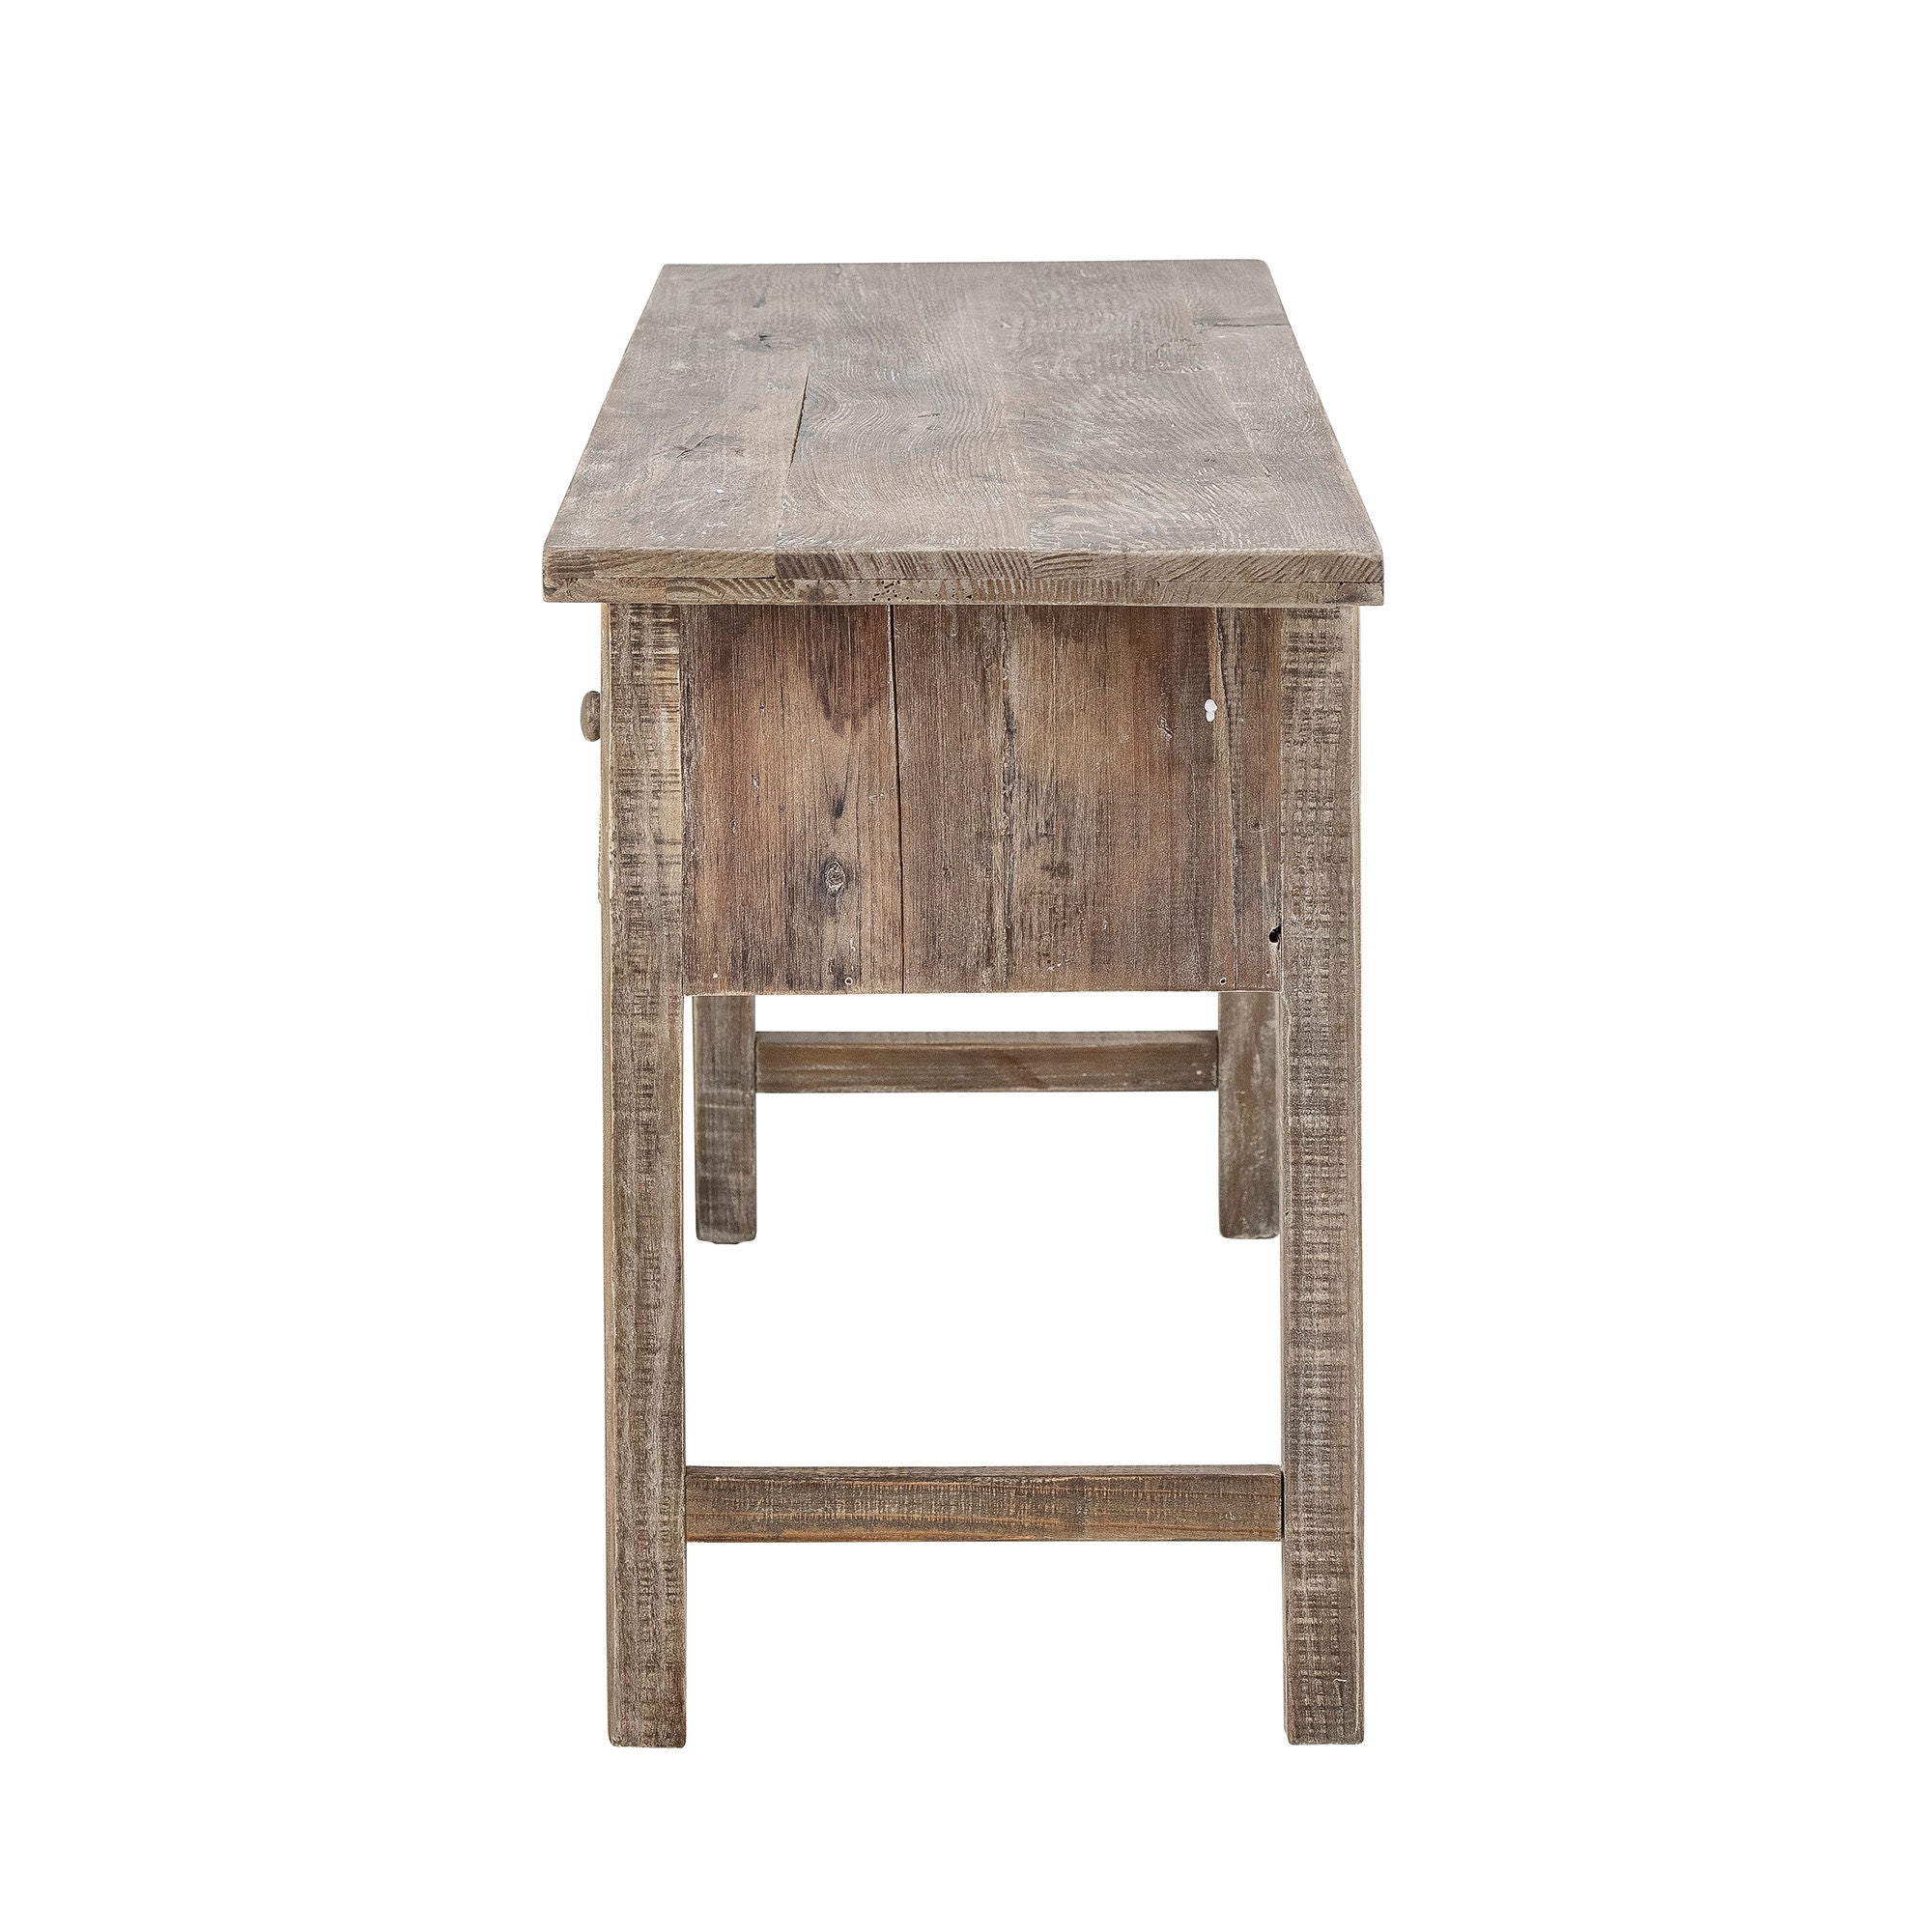 Table de consola de Camden Collection, naturaleza, madera de pino recuperada